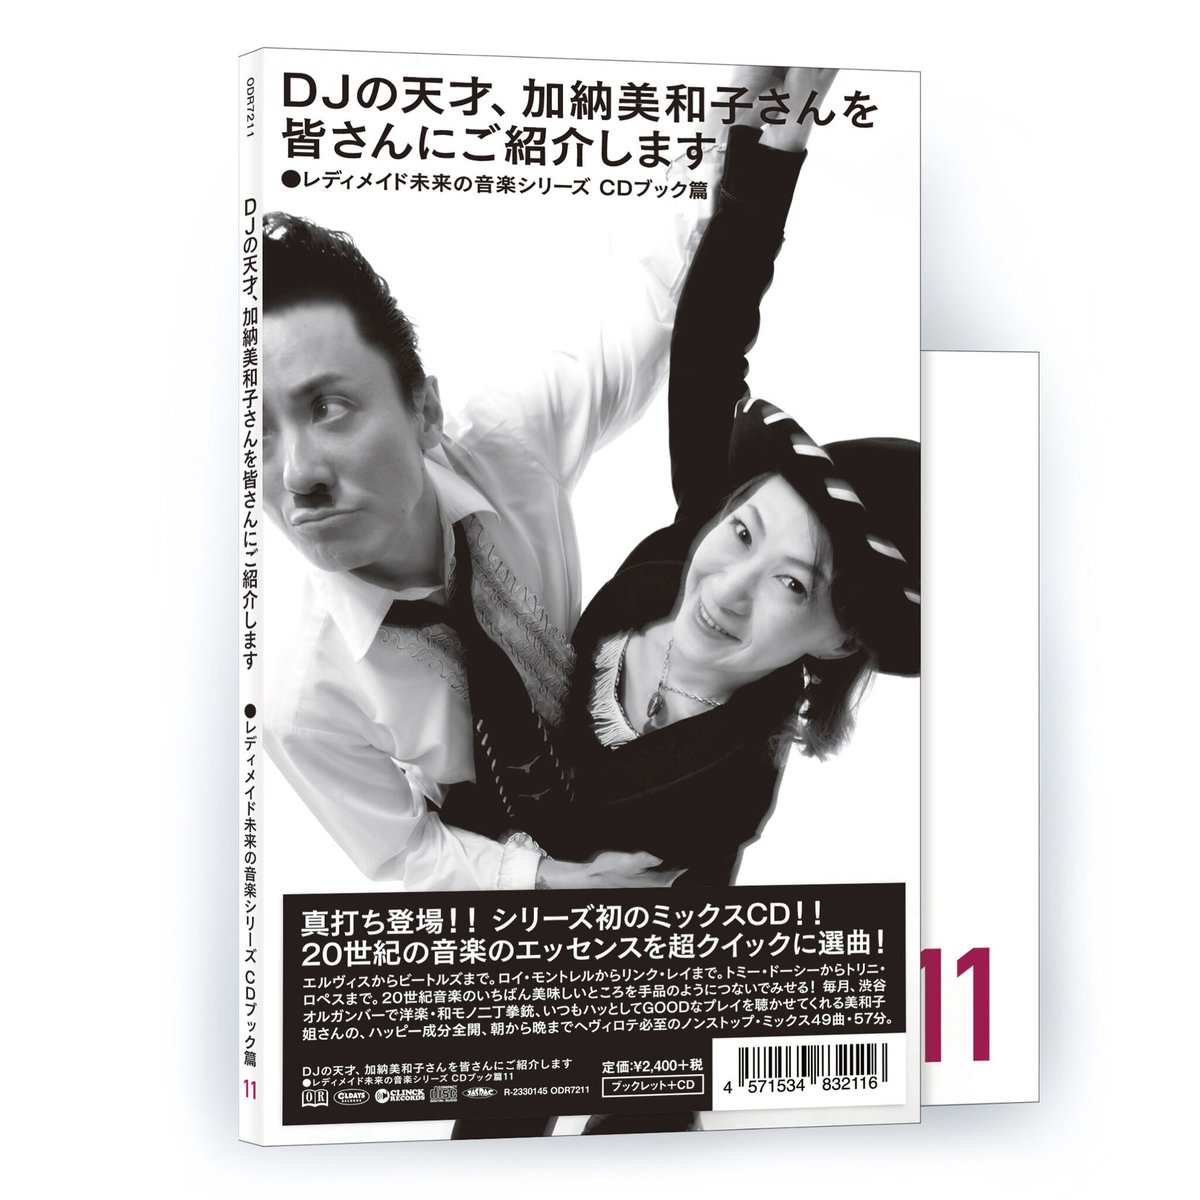 レディメイド未来の音楽シリーズ CDブック篇 #11 DJの天才、加納美和子さんを皆さんにご紹介します